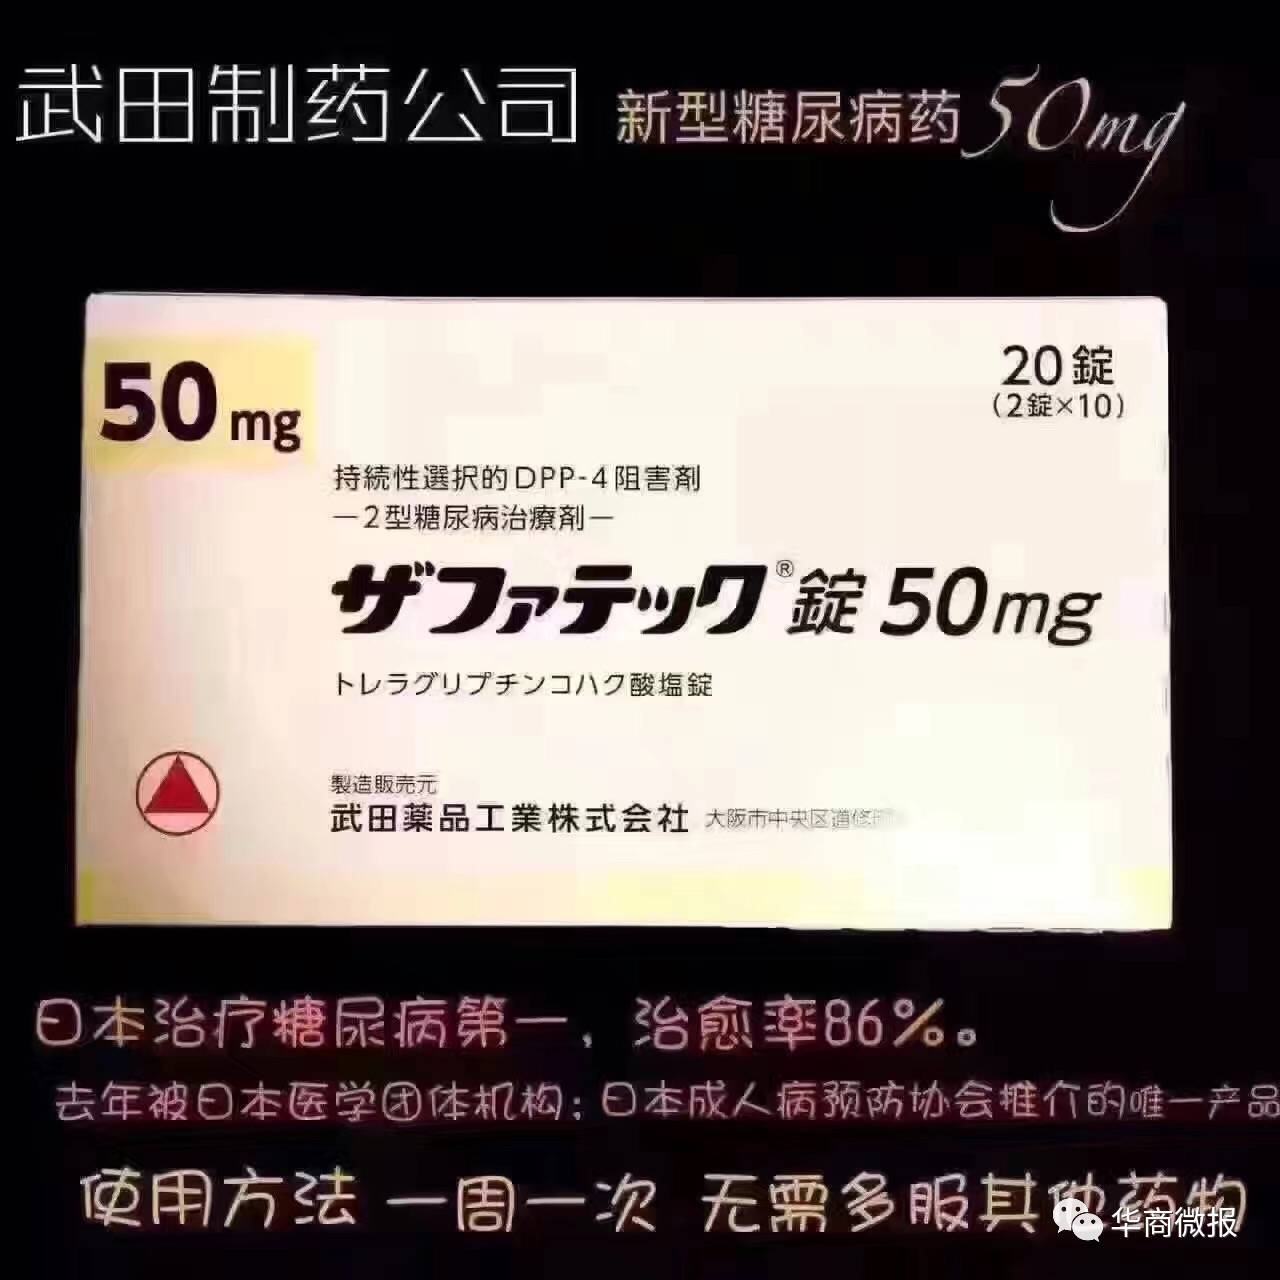 吐血整理,日本处方药大全